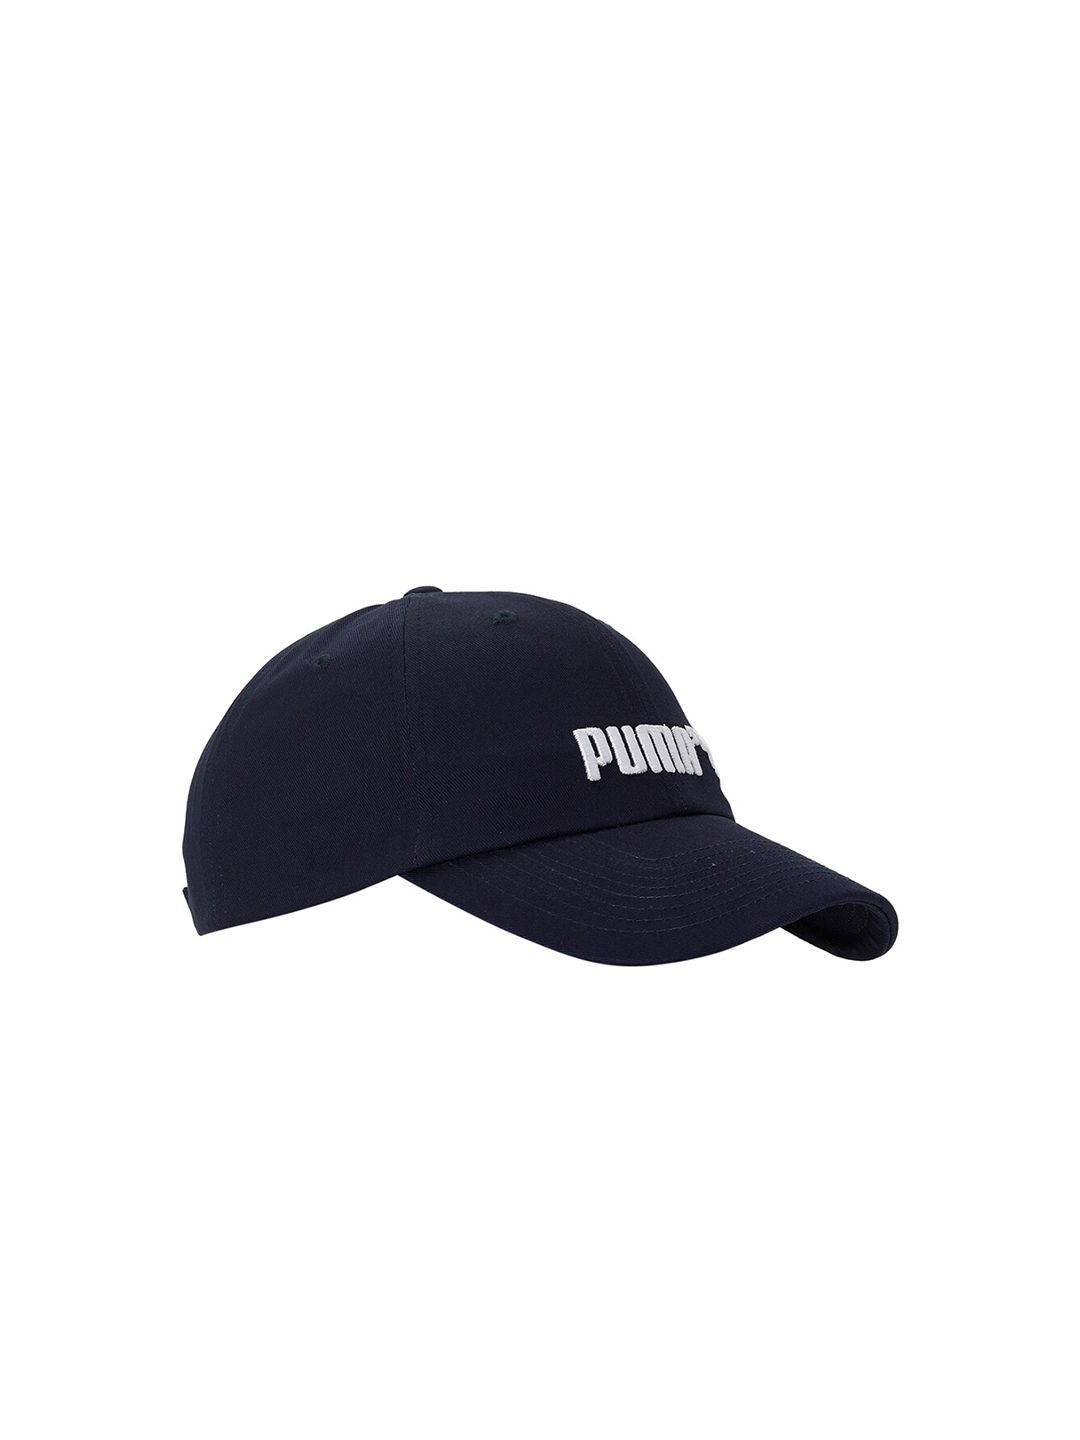 Puma Unisex Navy Blue Cotton Essentials No. 2 Logo Baseball Cap Price in India